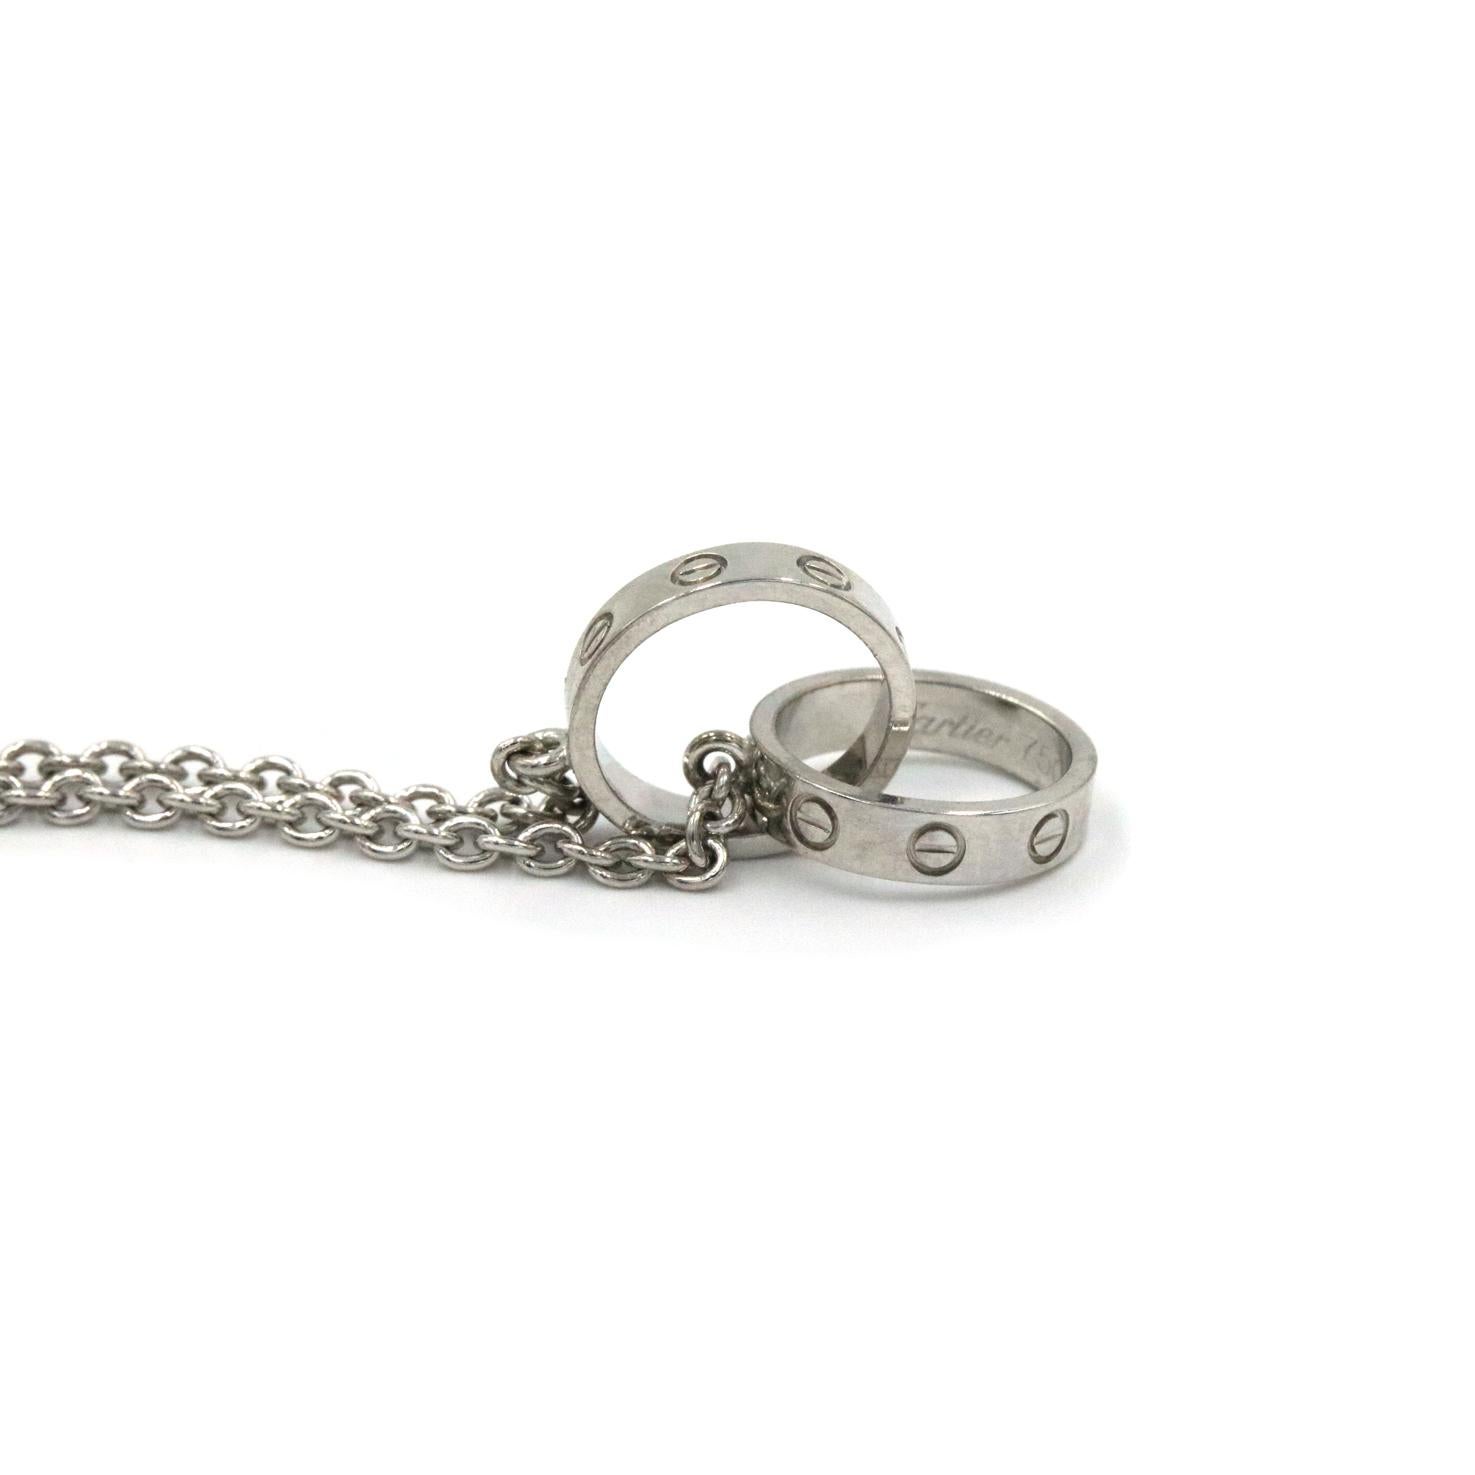 Collier Baby Love de Cartier en or blanc 18 carats. Ce collier comporte deux anneaux d'amour entrelacés sur une chaîne de 16 pouces.  SN. FO3604